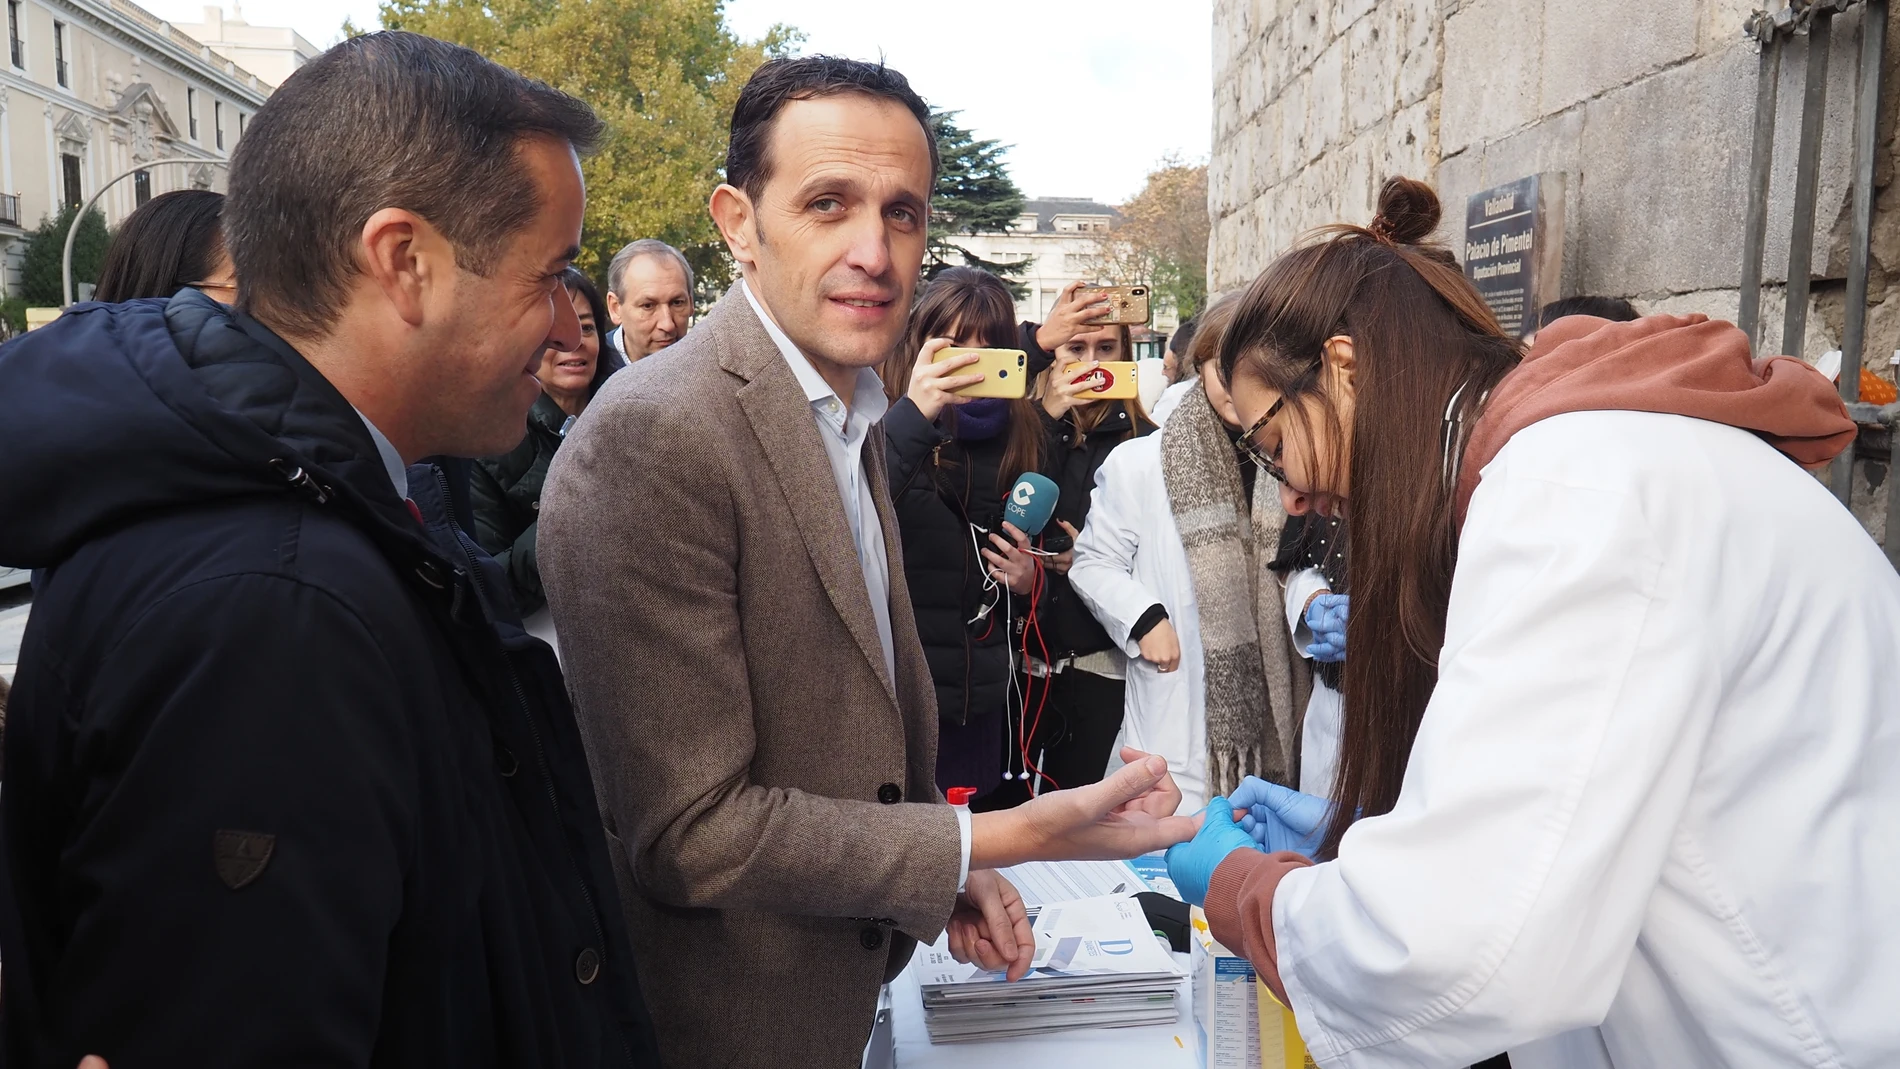 El presidente de la Diputación de Valladolid, Conrado Íscar, se realiza un análisis de glucemia en una de las mesas instaladas para sensibilizar a la población sobre esta enfermedad y realizar controles de glucemia